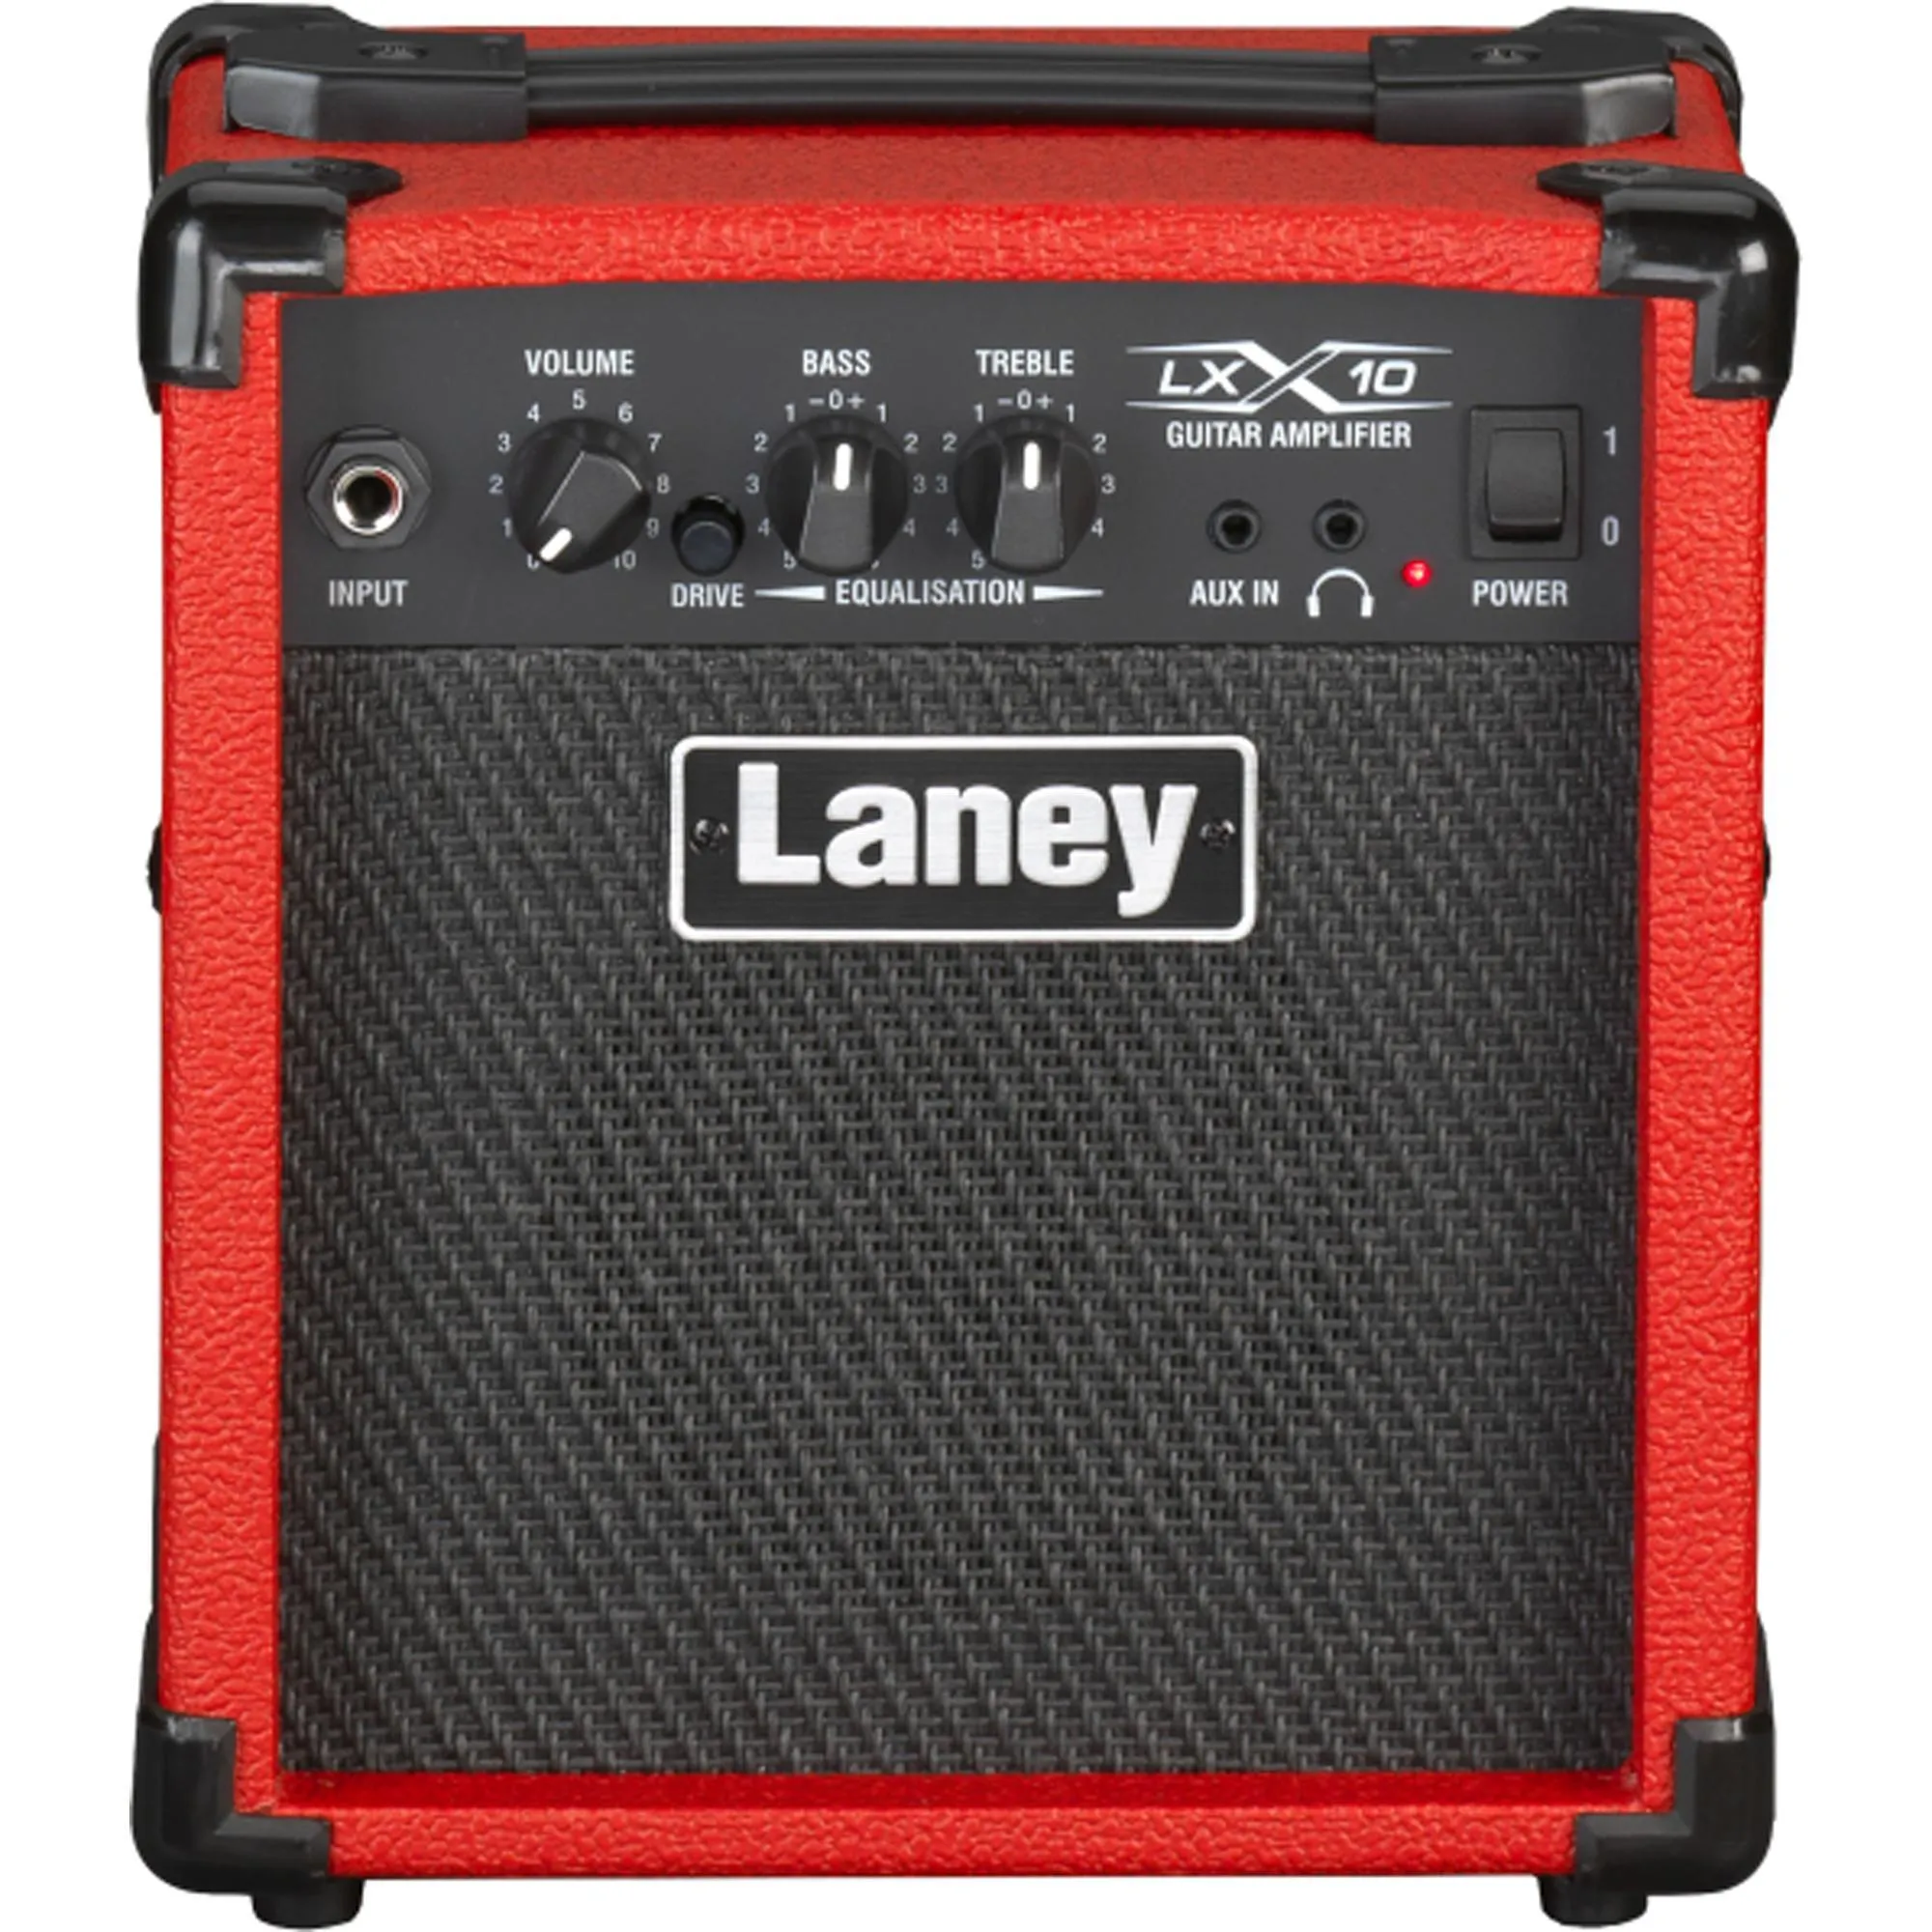 Amplificador Para Guitarra Laney LX10 Vermelho por 752,00 à vista no boleto/pix ou parcele em até 10x sem juros. Compre na loja Mundomax!